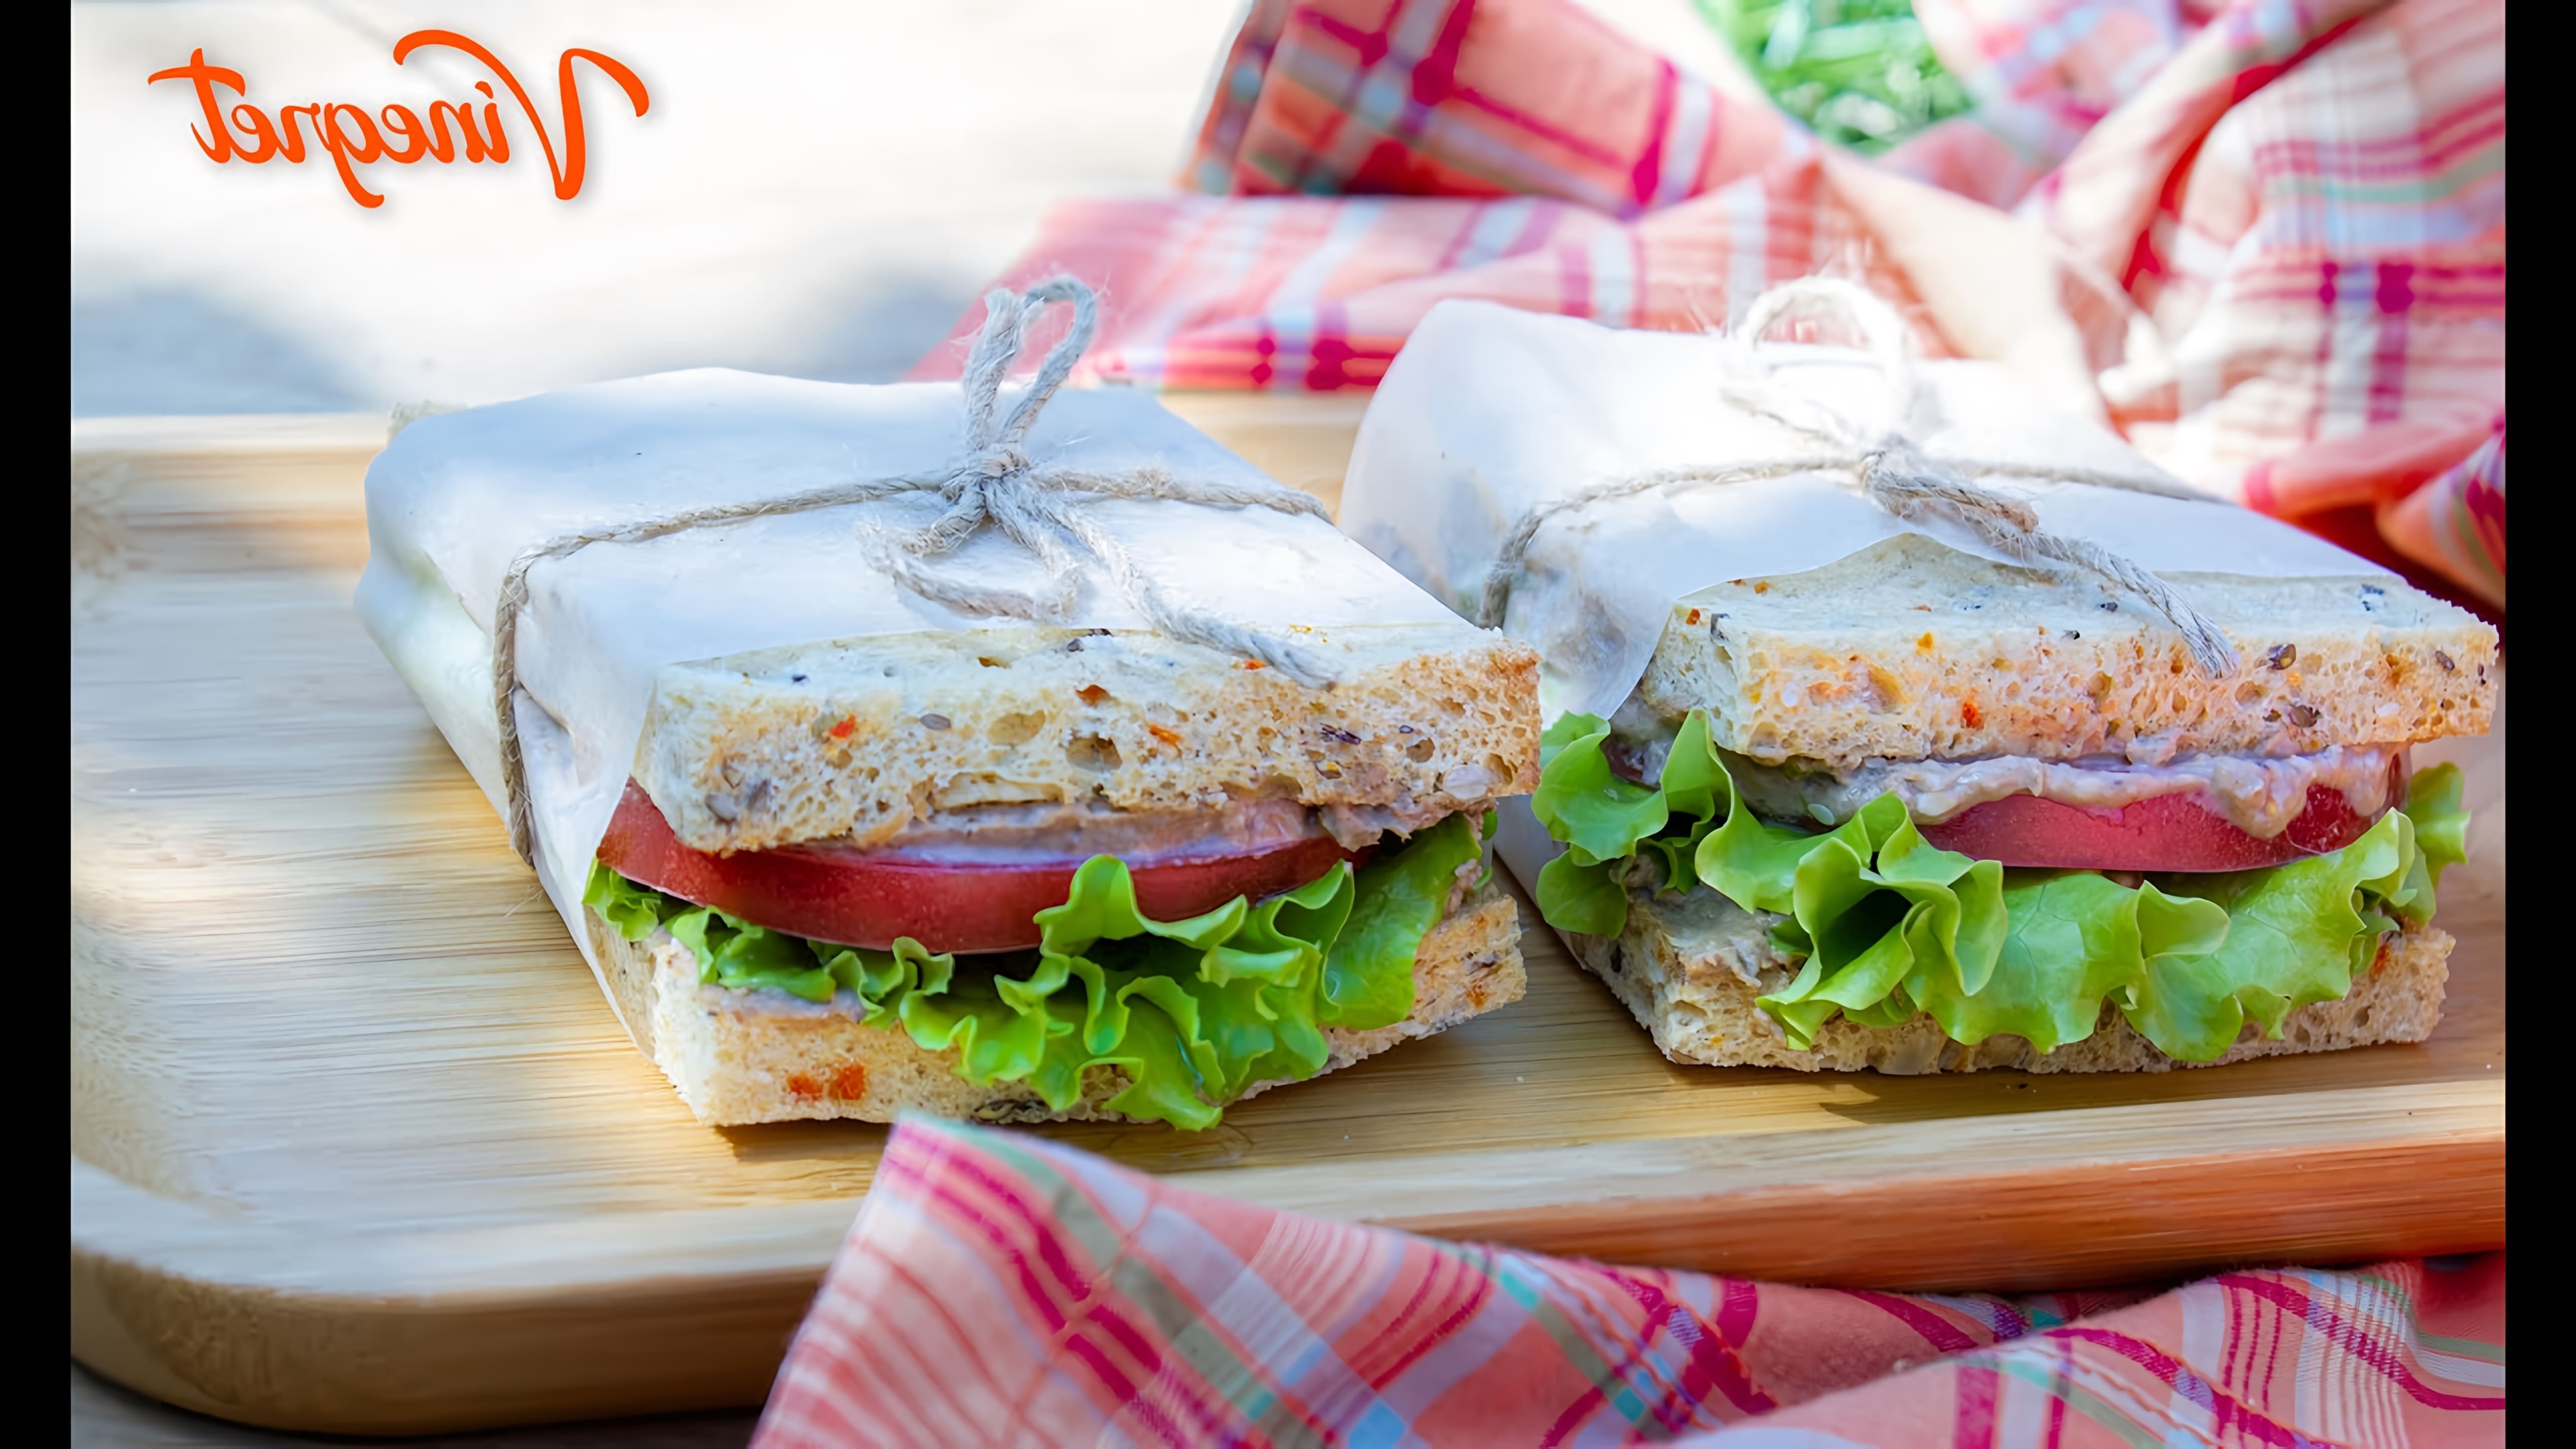 В этом видео демонстрируется рецепт клубного сэндвича с тунцом, овощами и зеленью